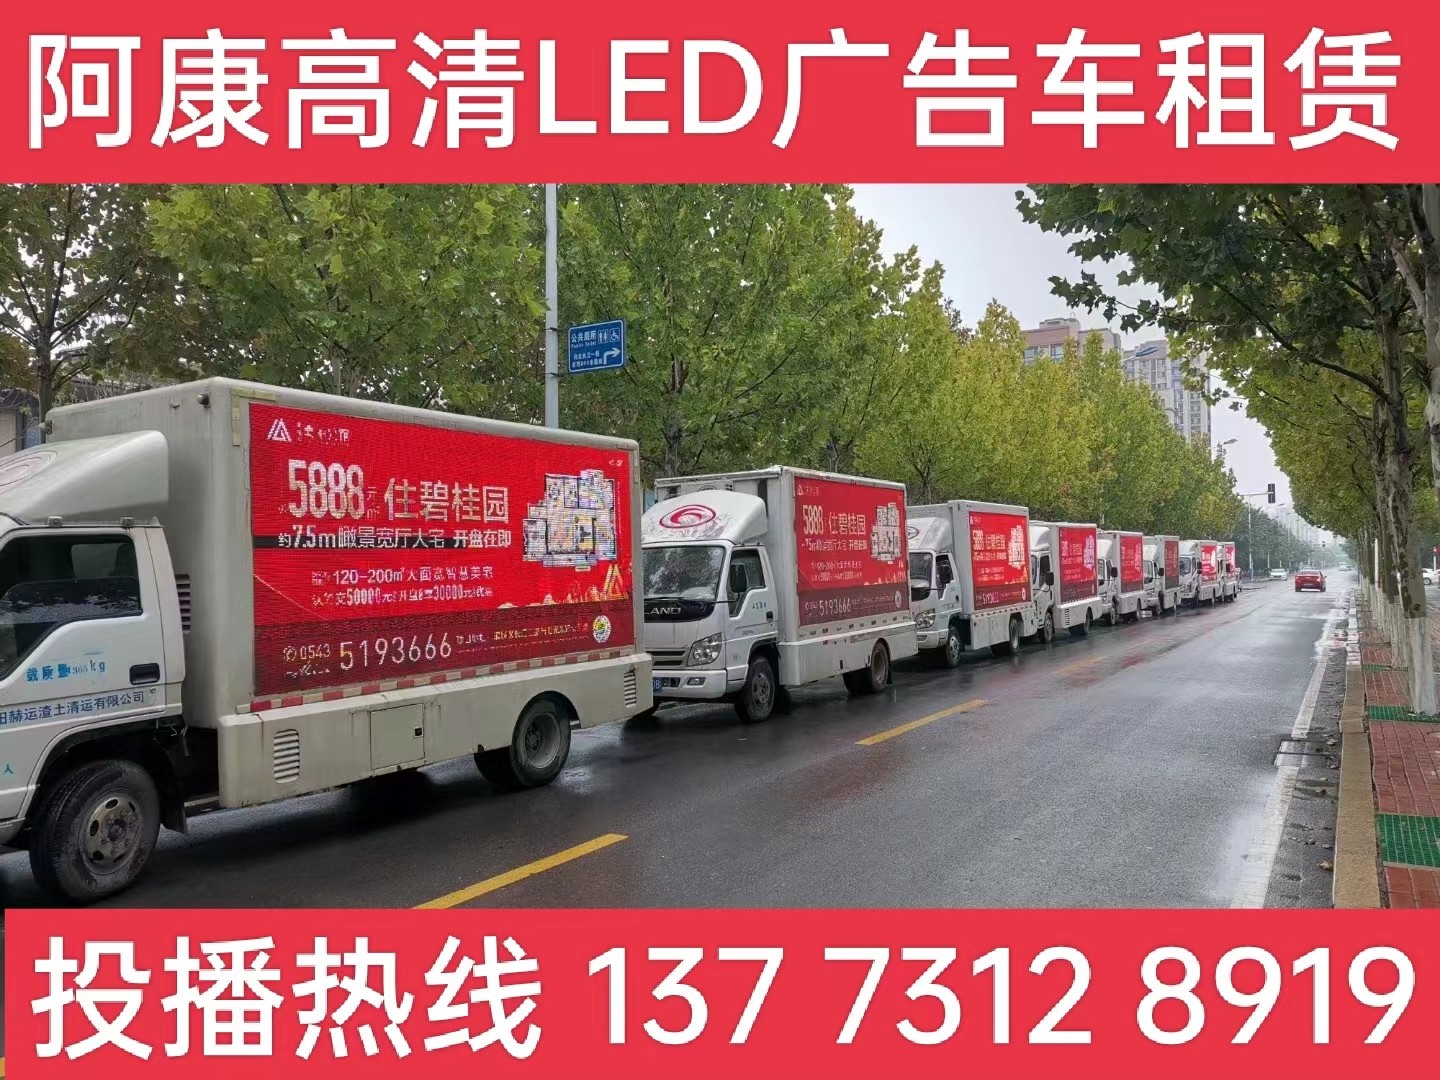 如东县宣传车租赁公司-楼盘LED广告车投放